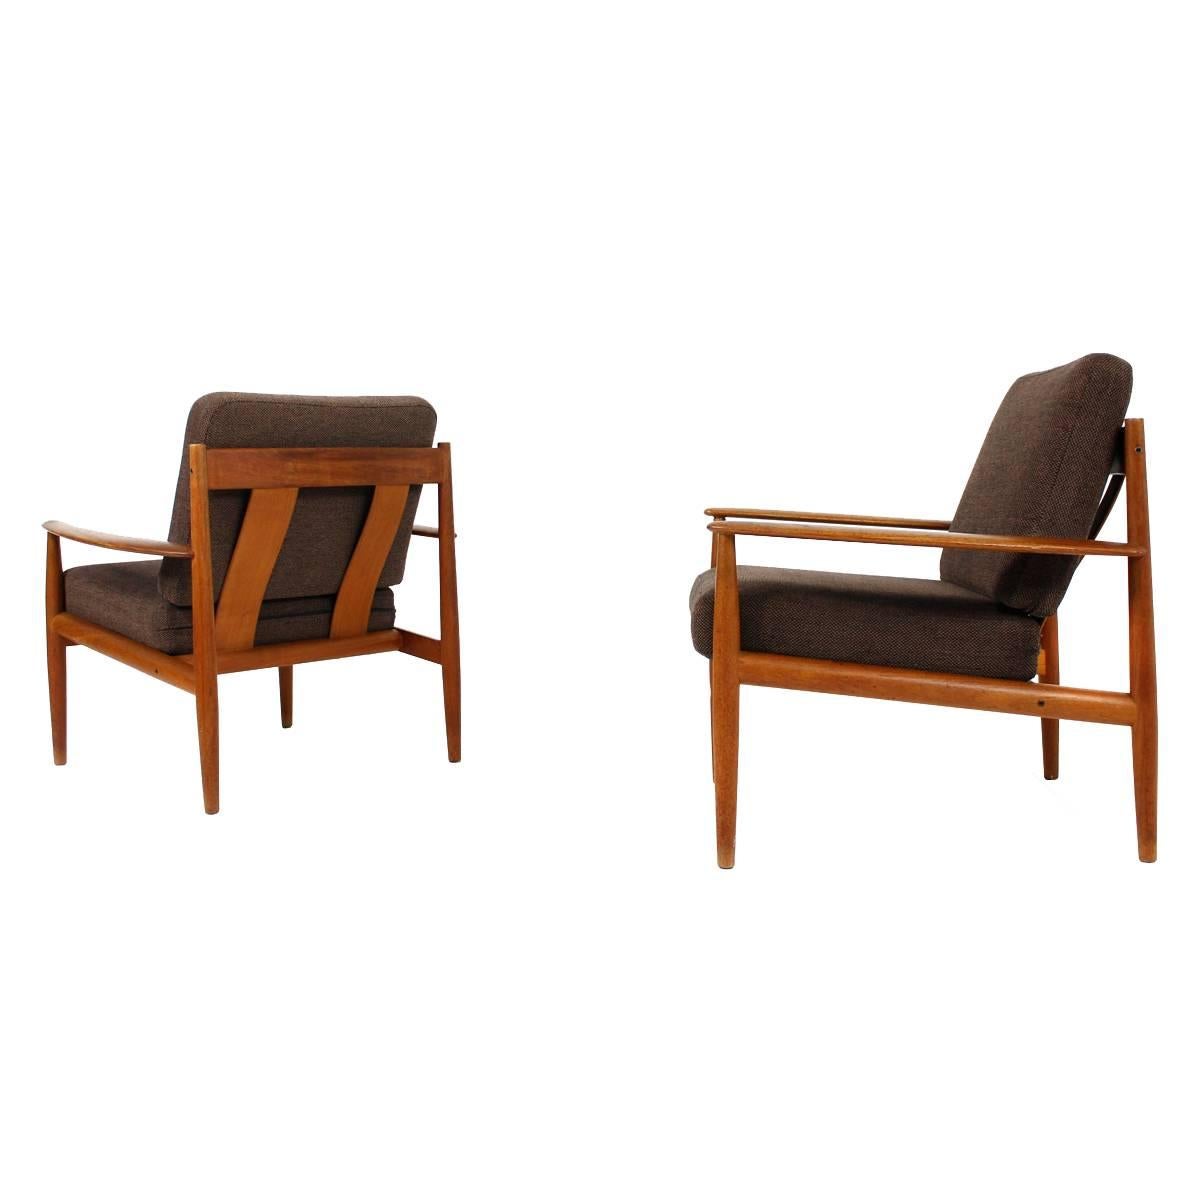 Pair of 1960s Grete Jalk Teak Easy Chairs, France & Son, Denmark, Midcentury